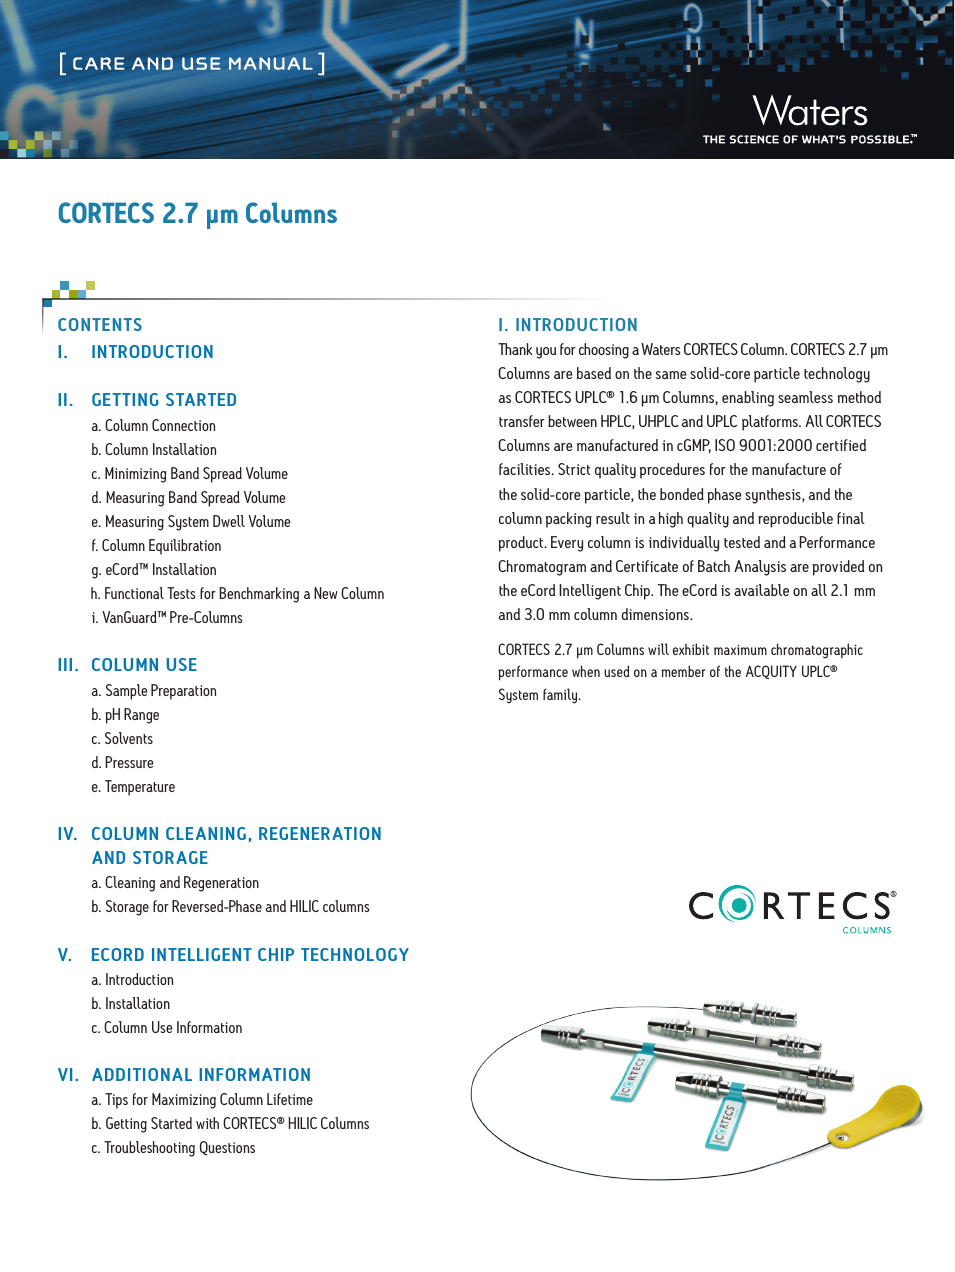 CORTECS 2.7 um Columns